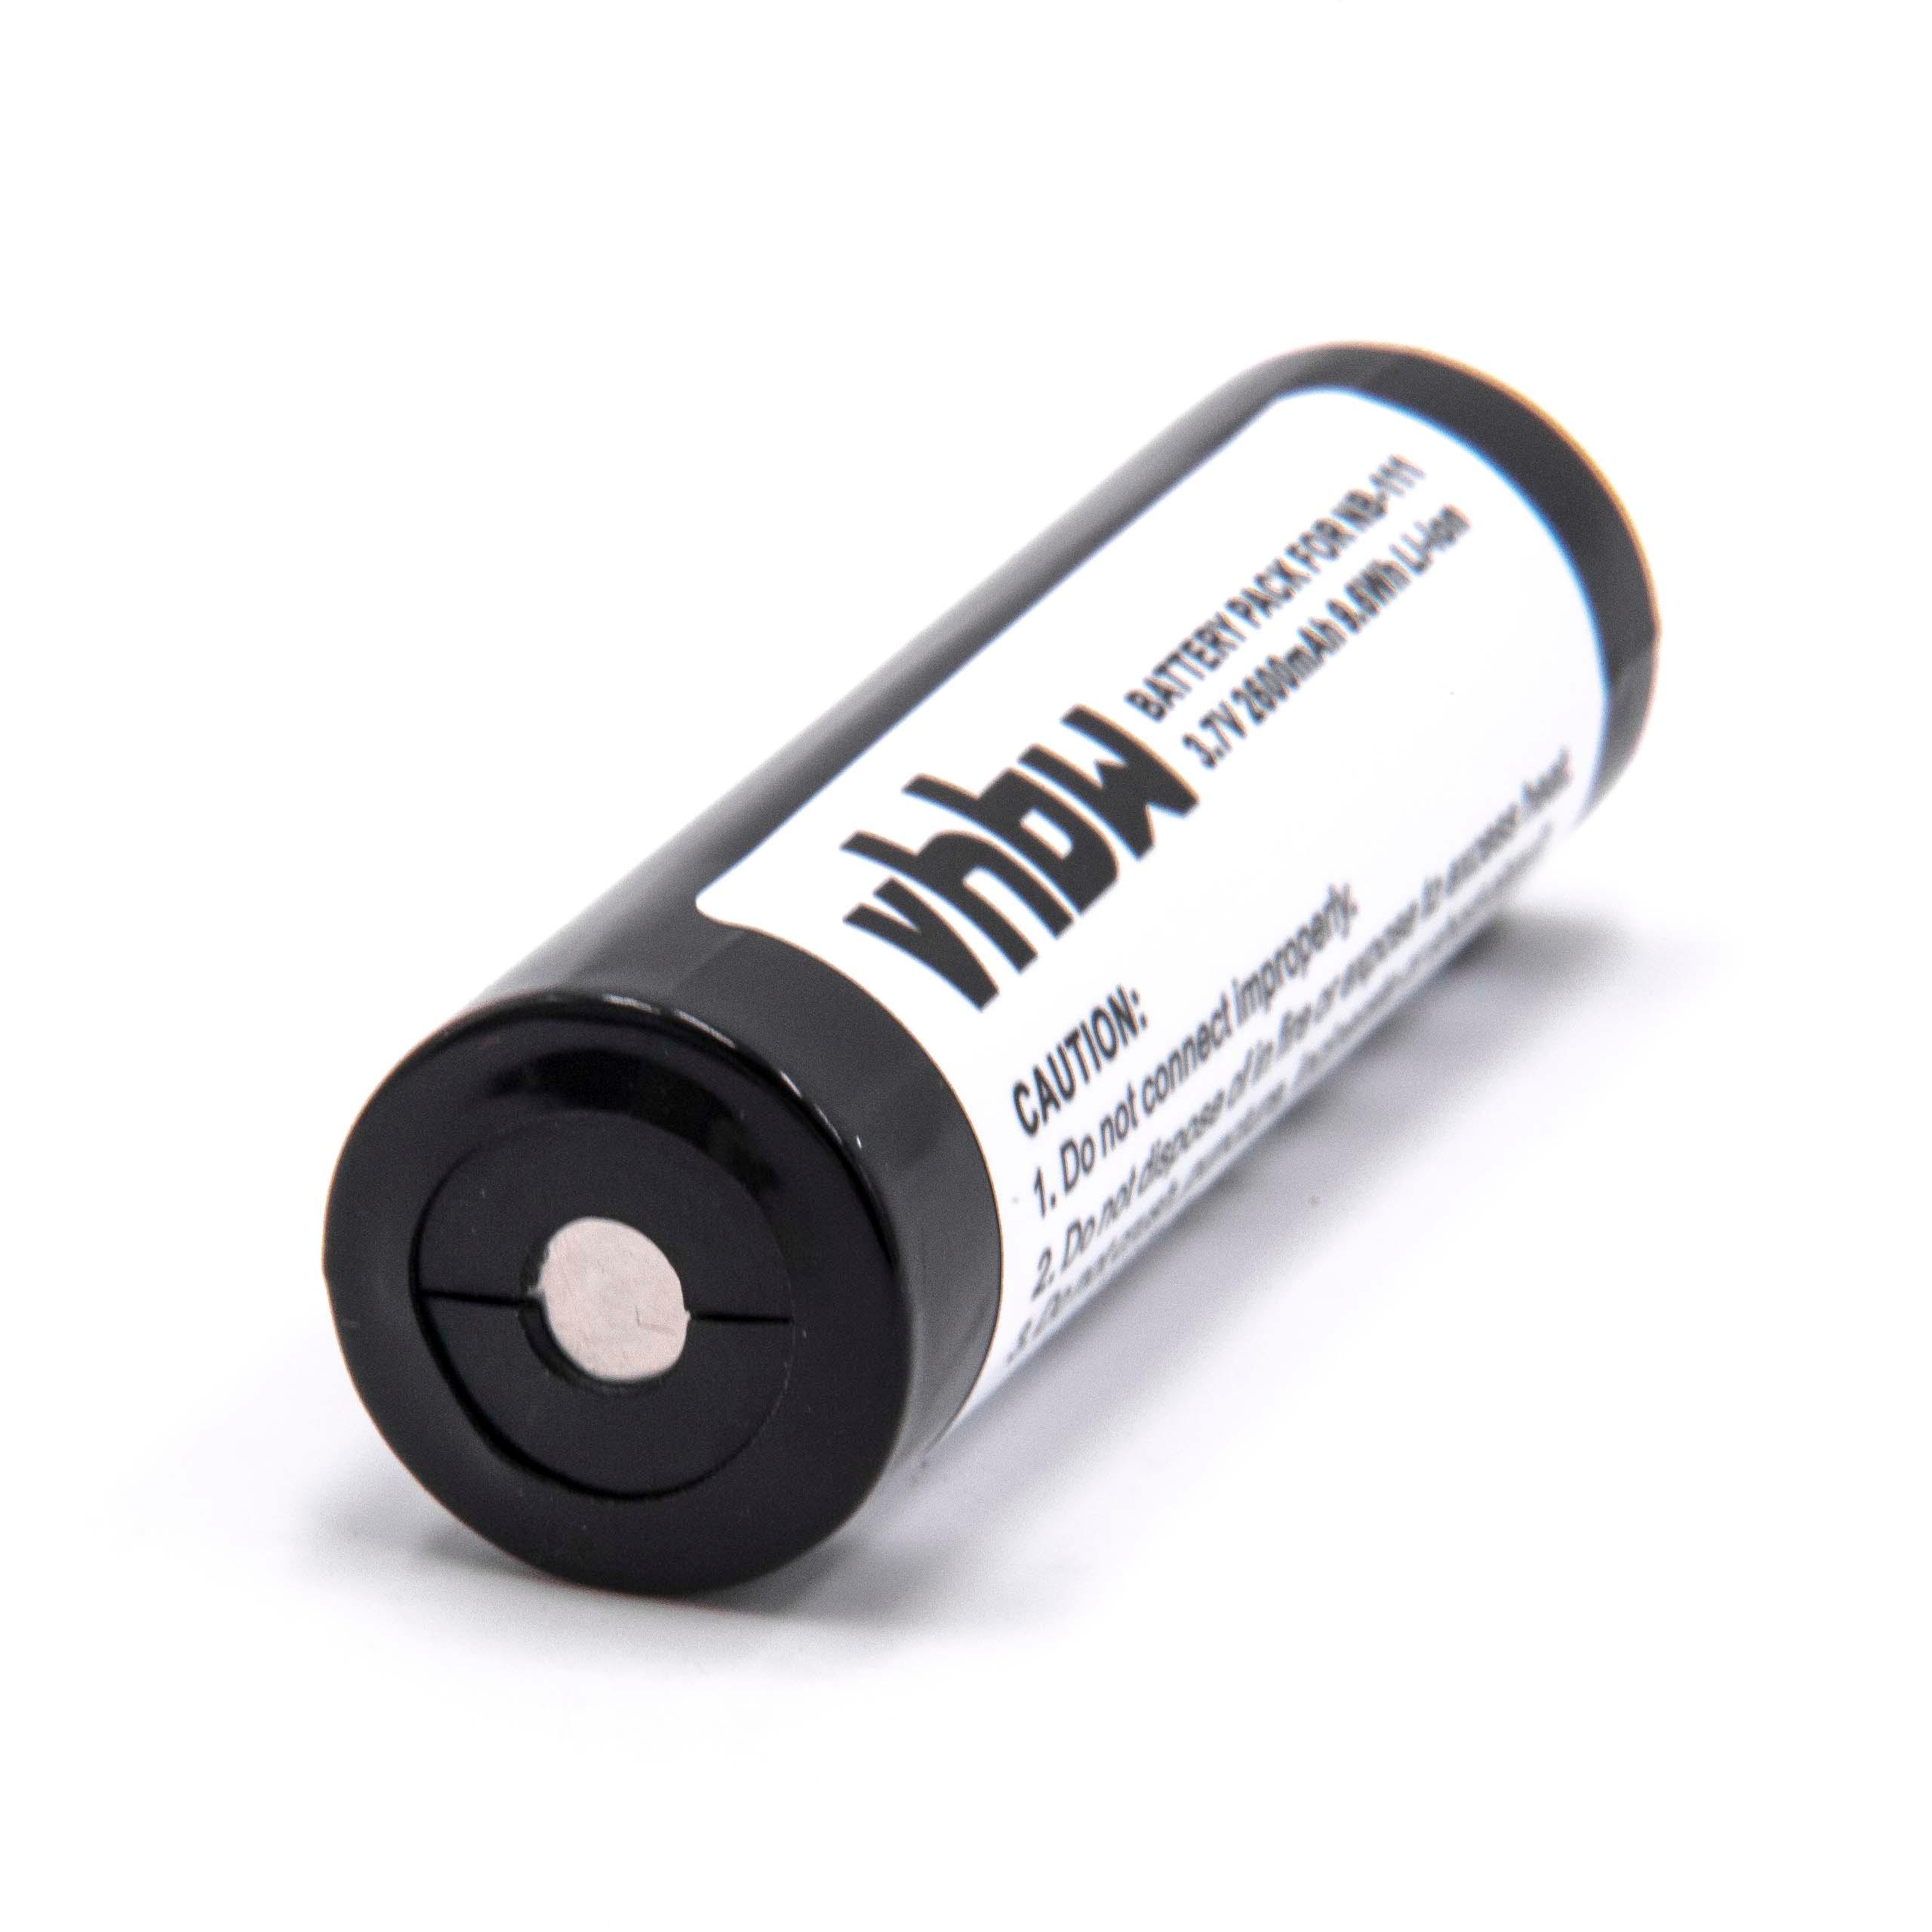 Batteria per Minidisc, MiniDV sostituisce BP-1600R Denon - 2600mAh 3,7V Li-Ion